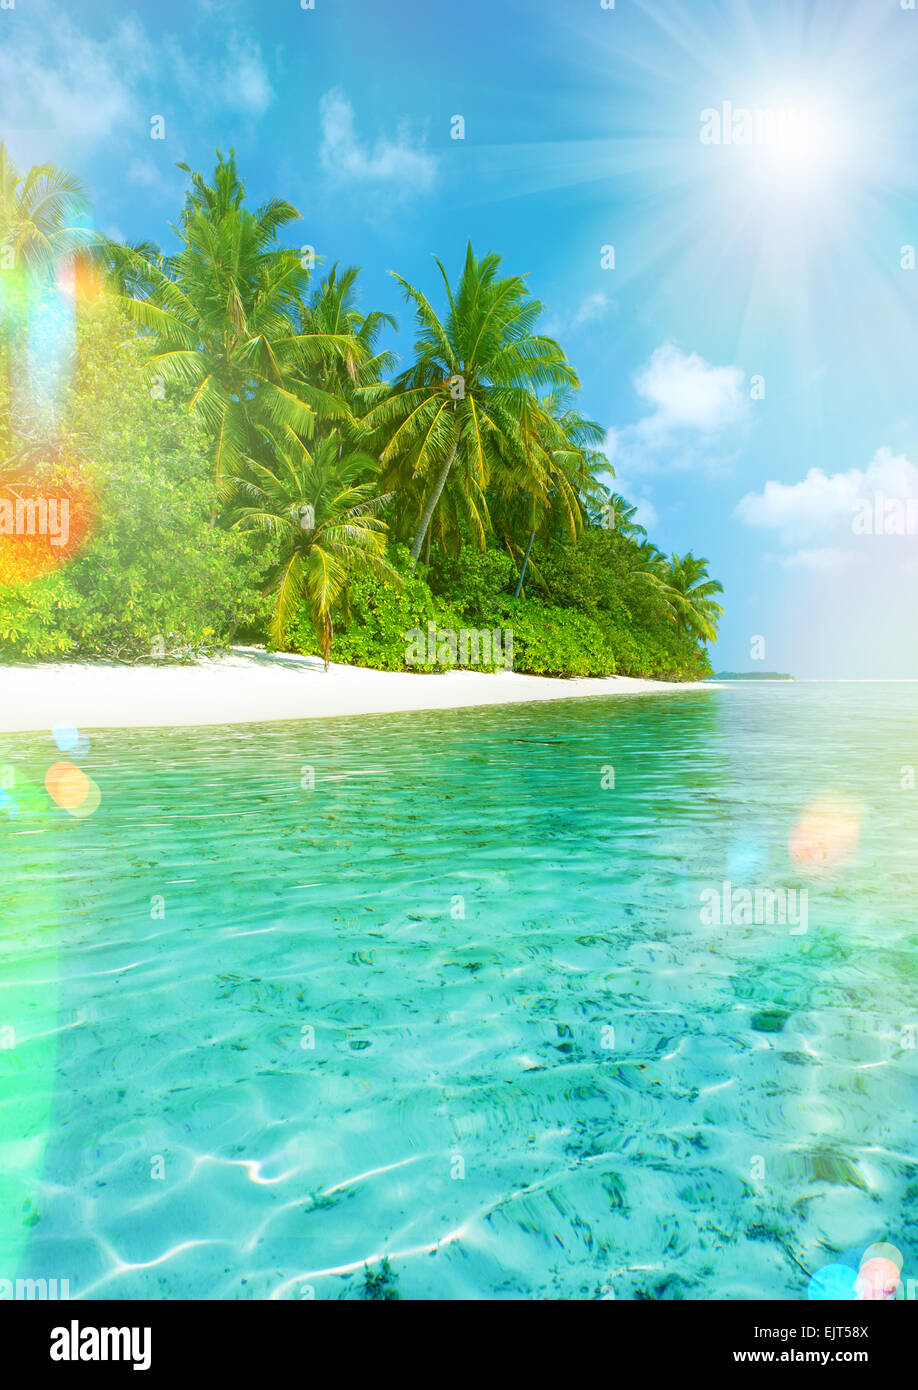 Plage de l'île tropicale avec un ciel parfait. Retro style tonique photo avec pénétration de la lumière et reflets de l'objectif Banque D'Images